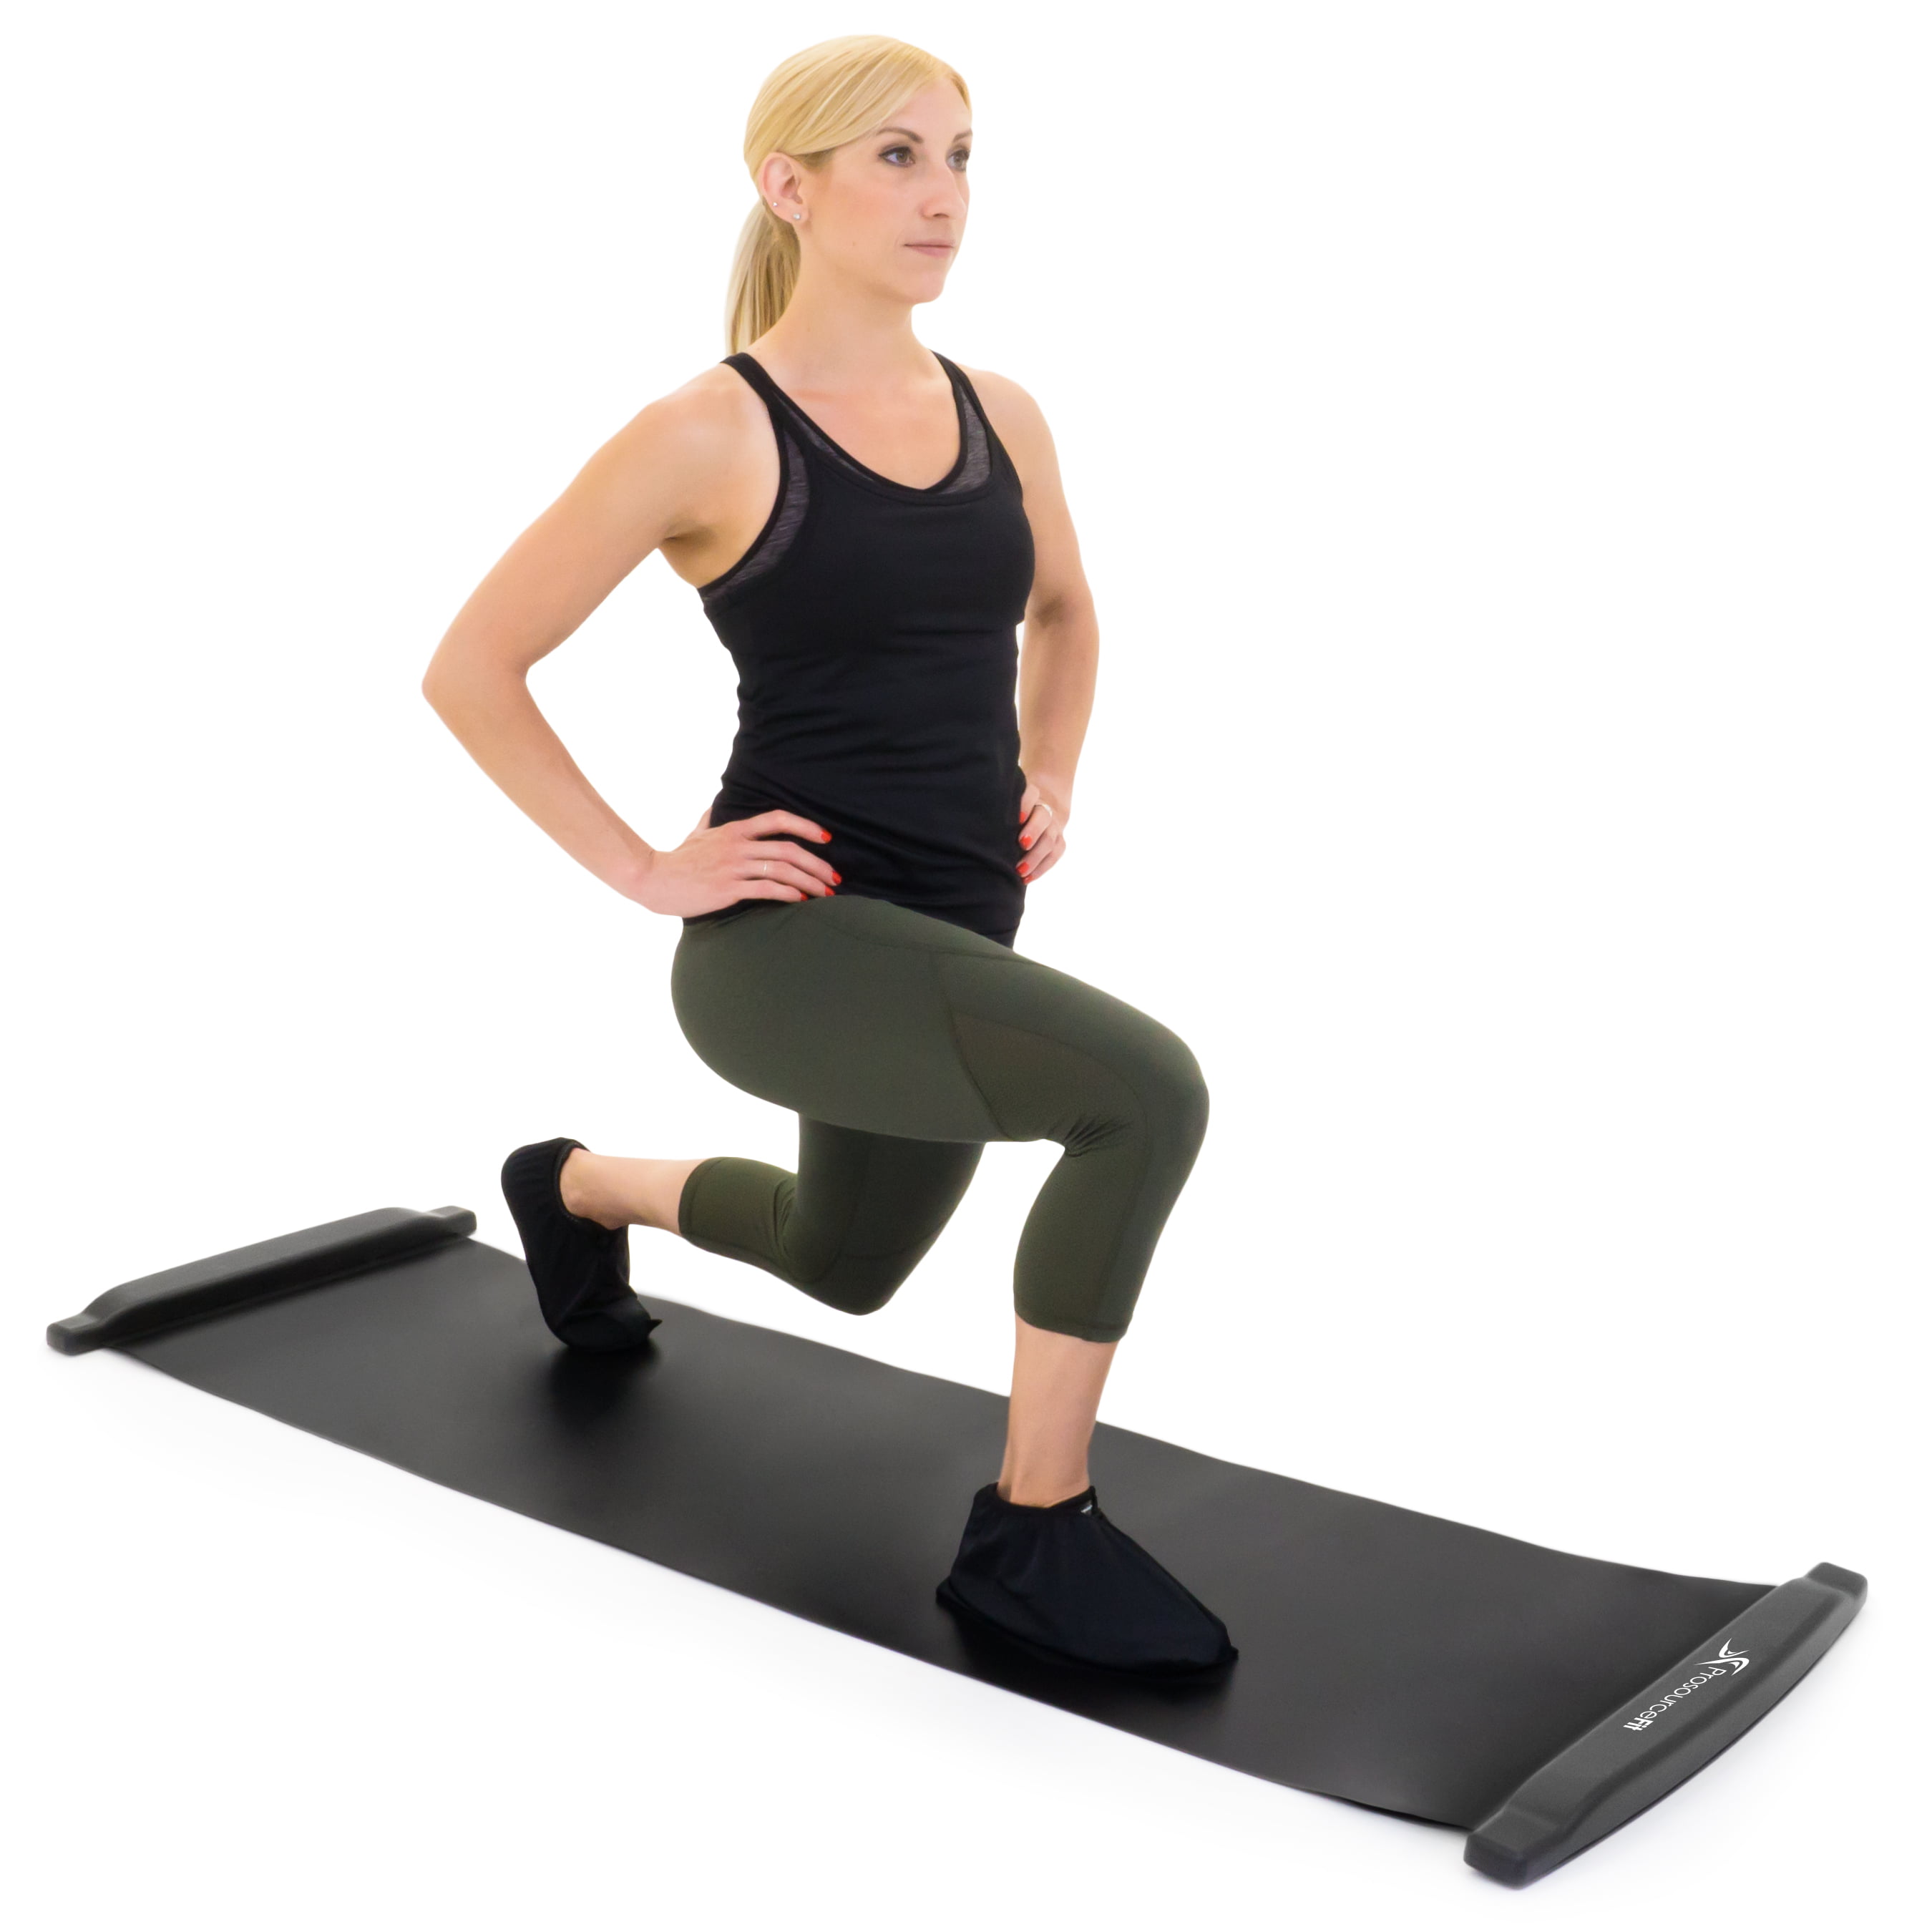 slide exercise mat